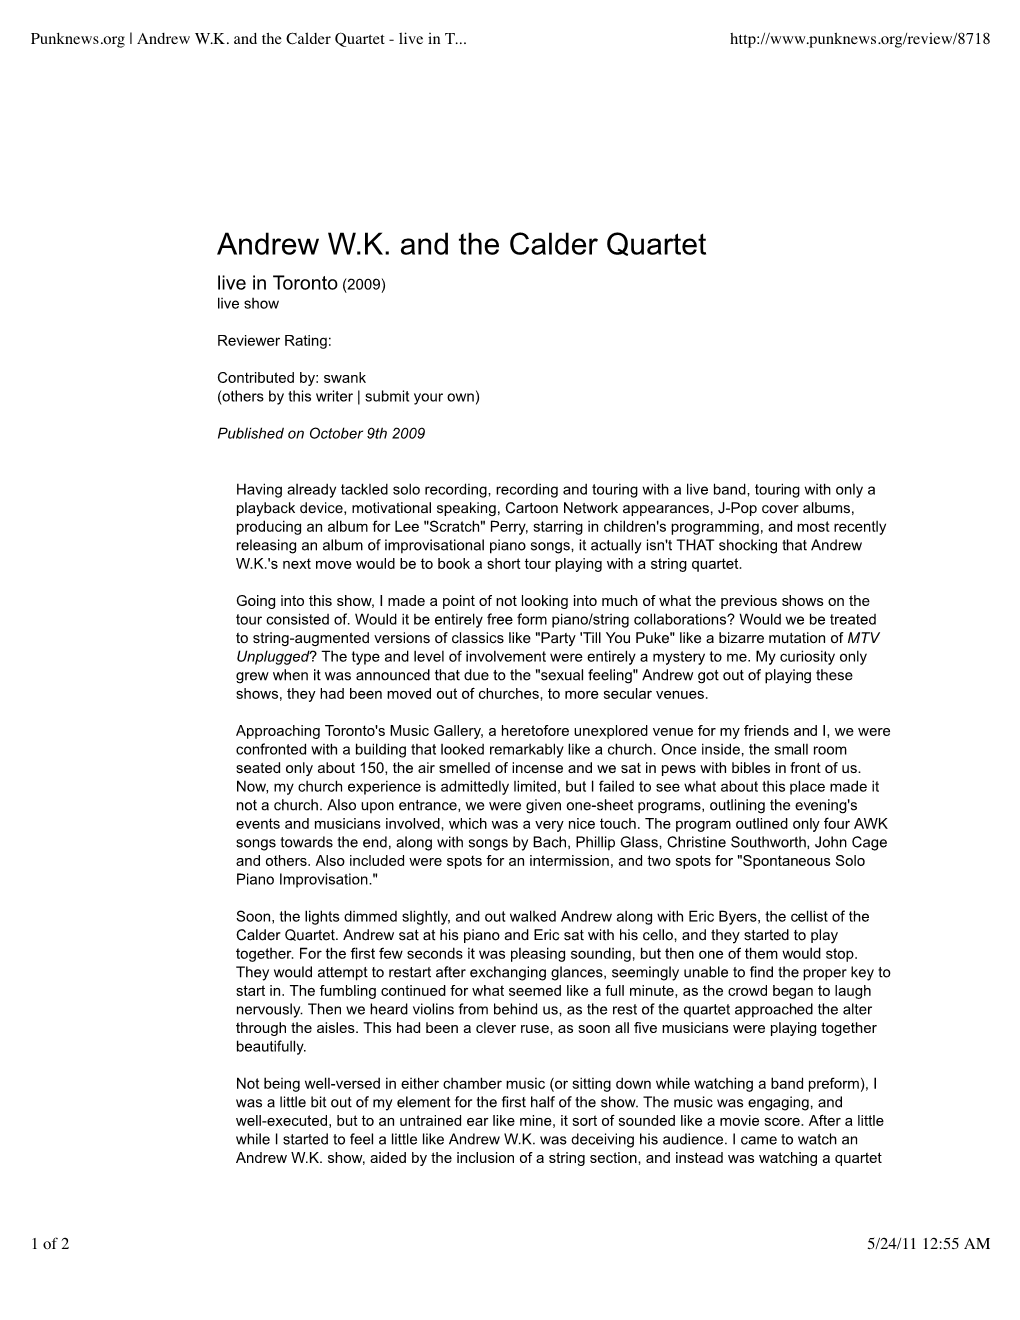 Andrew WK and the Calder Quartet